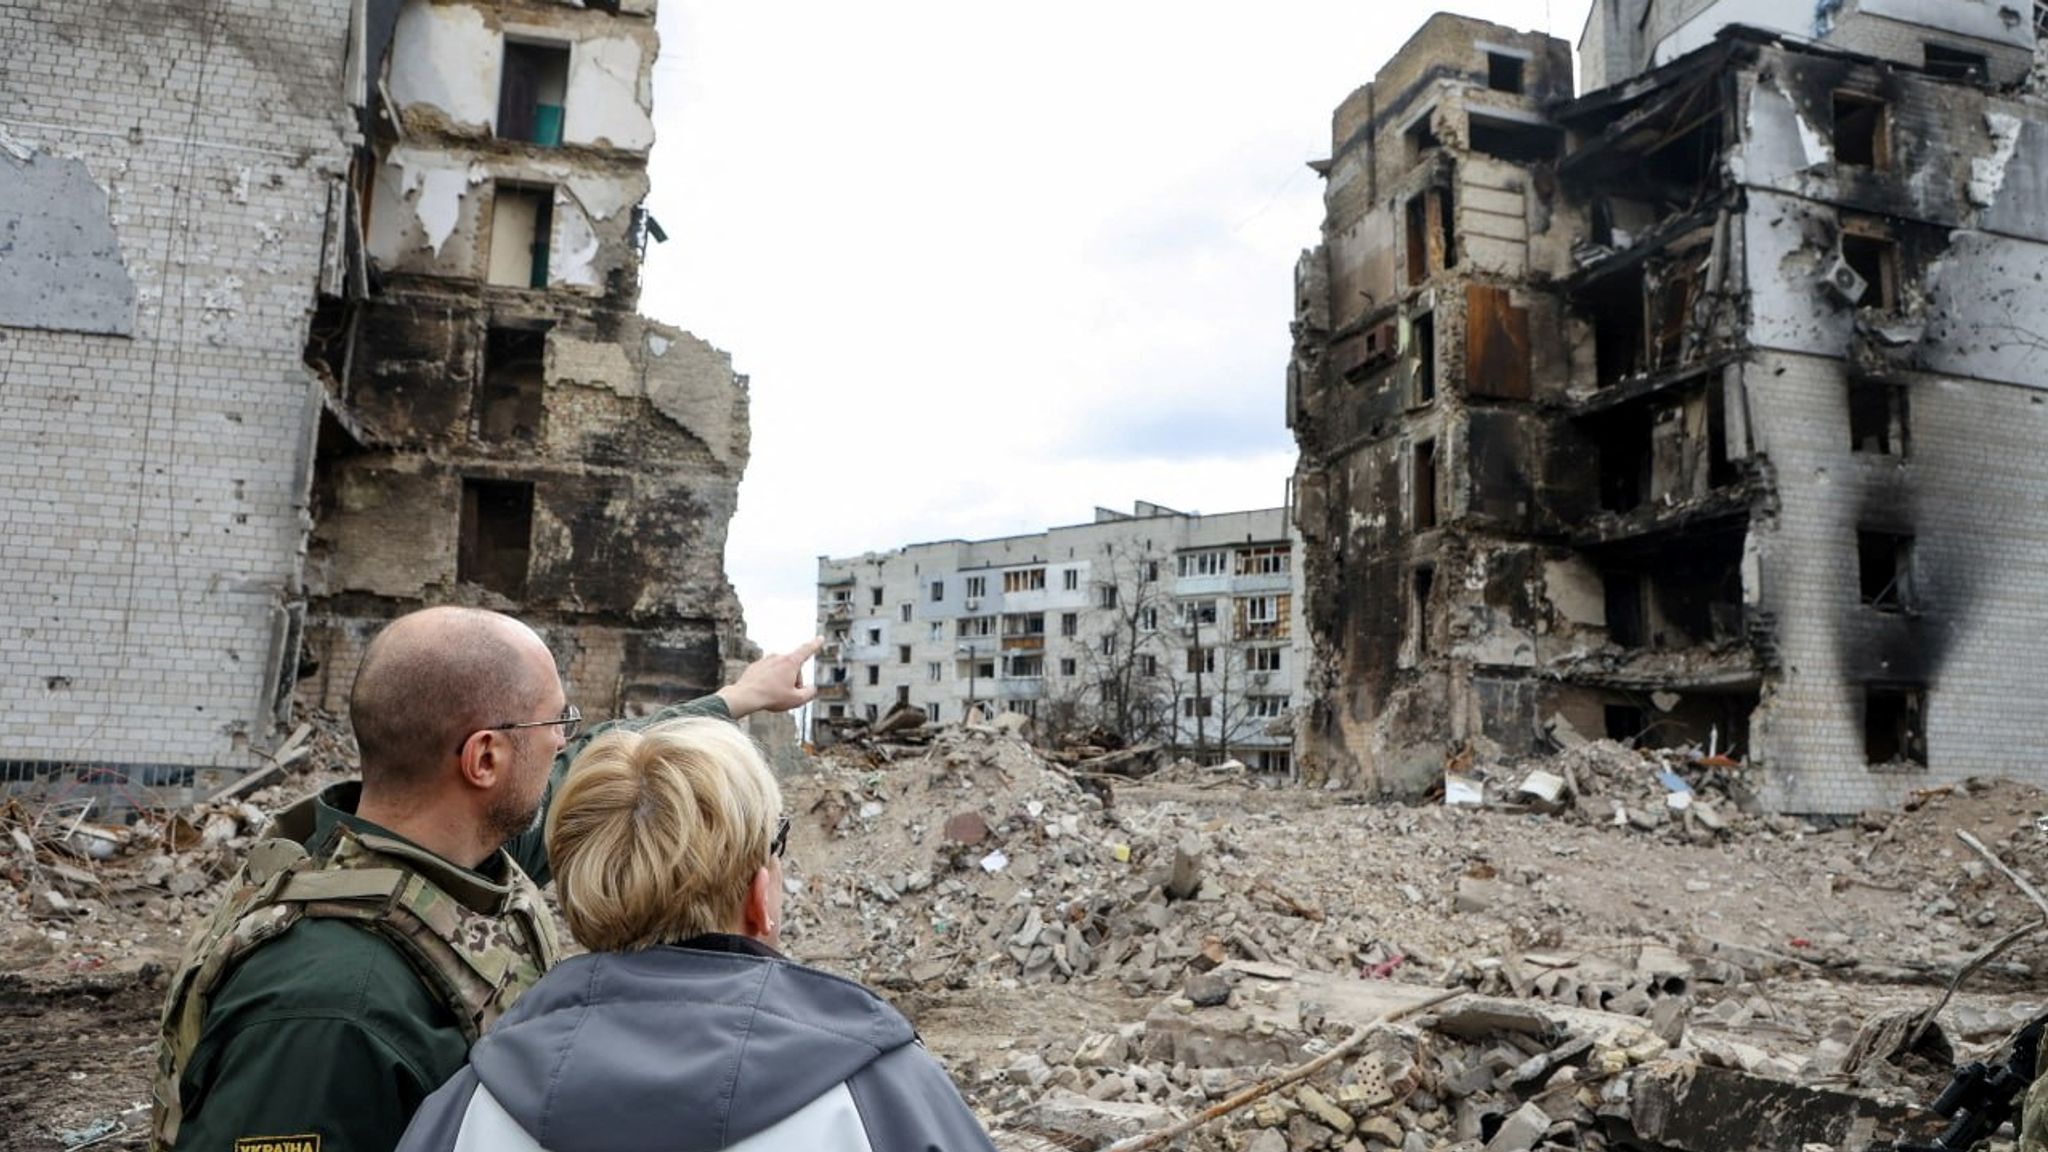 Бои в крупном городе. Разрушенный дом. Разрушенный войной дом. Руины Донбасса.